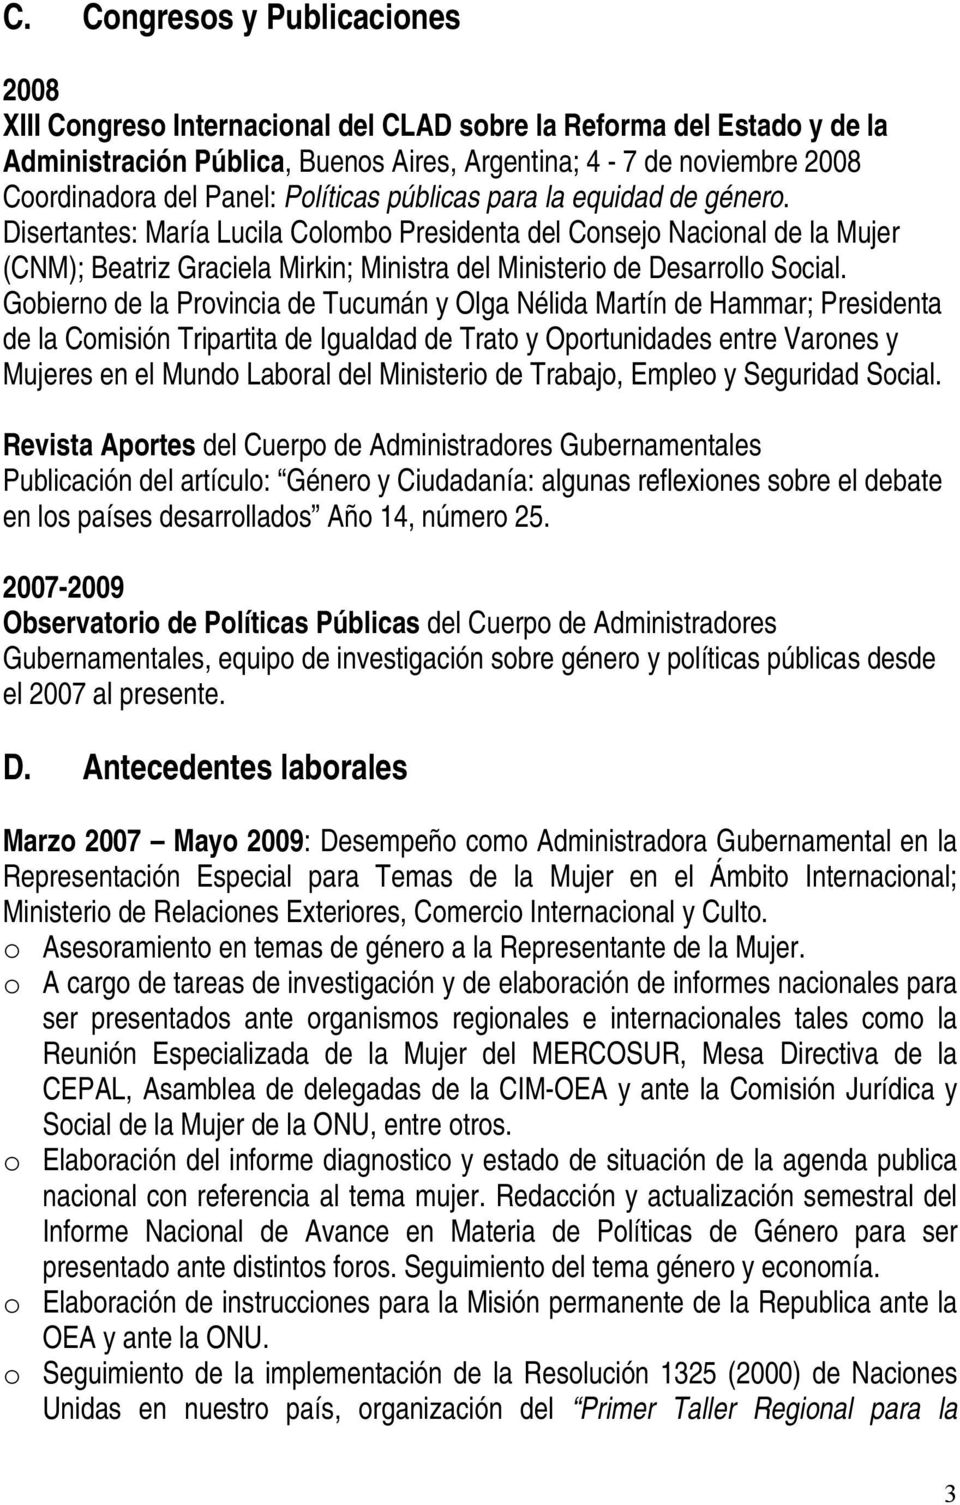 Disertantes: María Lucila Colombo Presidenta del Consejo Nacional de la Mujer (CNM); Beatriz Graciela Mirkin; Ministra del Ministerio de Desarrollo Social.